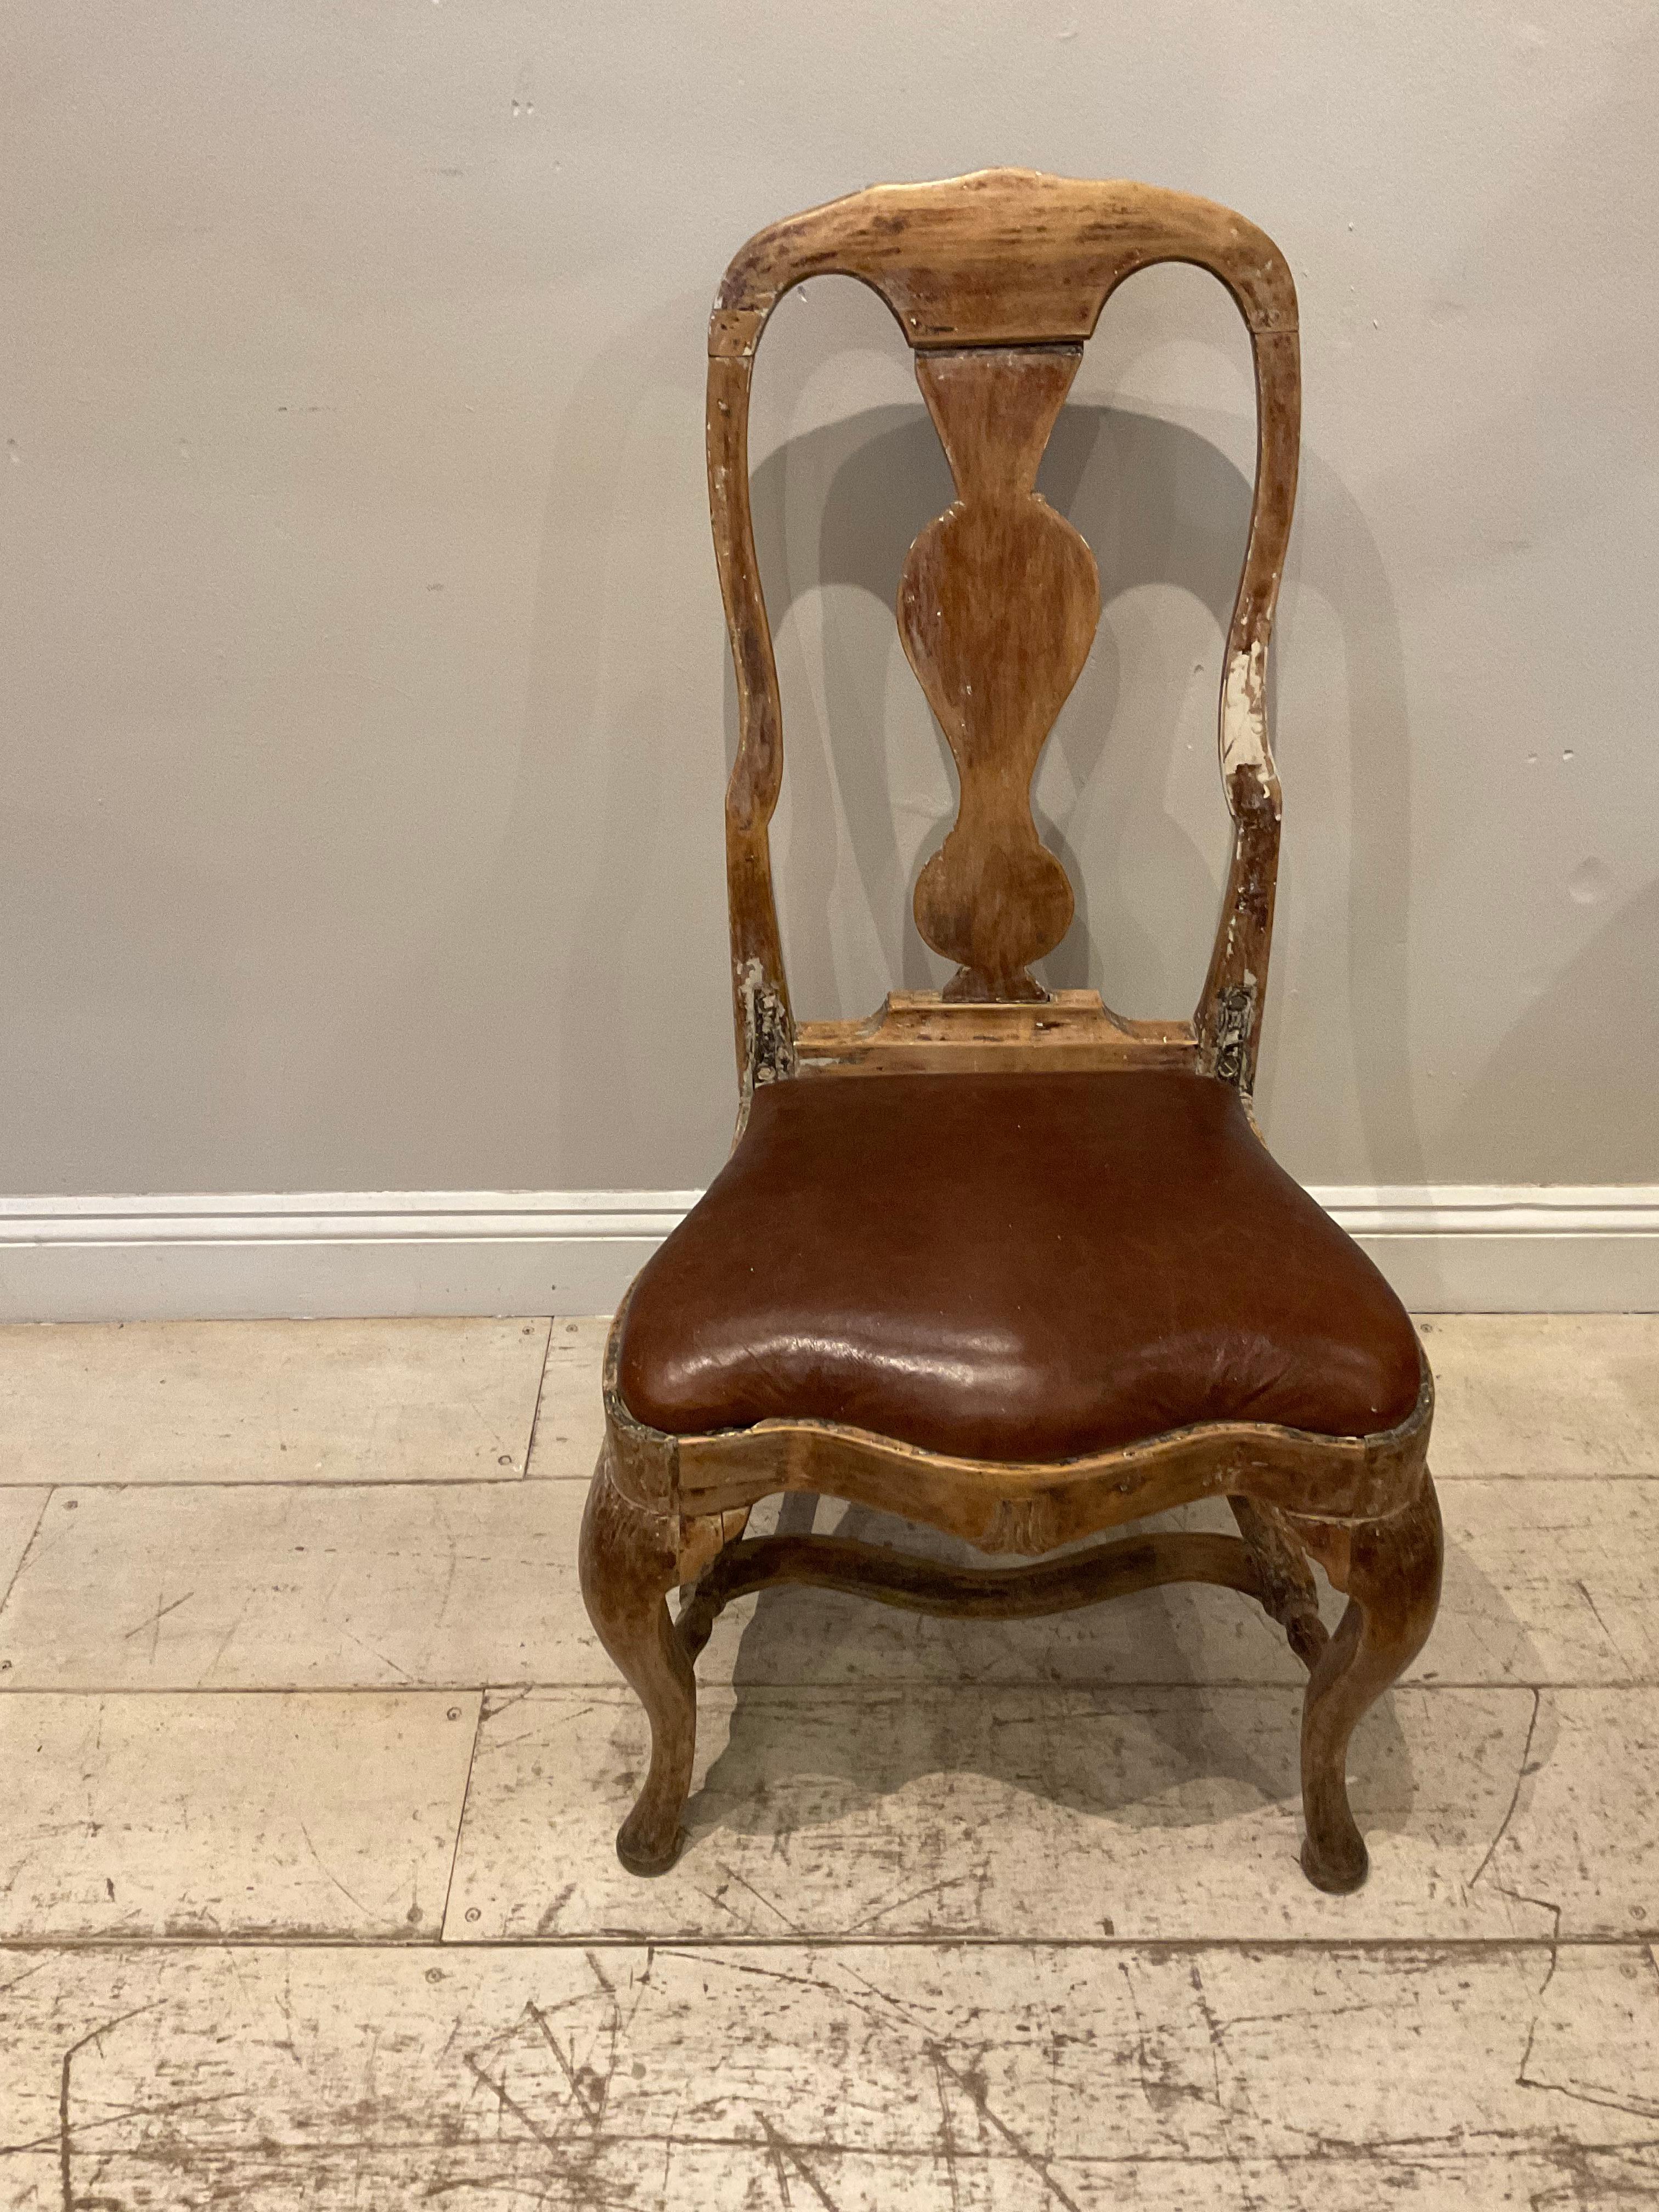 Schwedischer Rokokostuhl aus dem 18. Jahrhundert mit Ledersitz.
Ein hübscher Stuhl mit hoher Rückenlehne um 1760, der eine einfache, schlichte, gut abgenutzte Patina und einen Ledersitz hat, der im Laufe der Zeit ersetzt wurde.

Perfekt für den